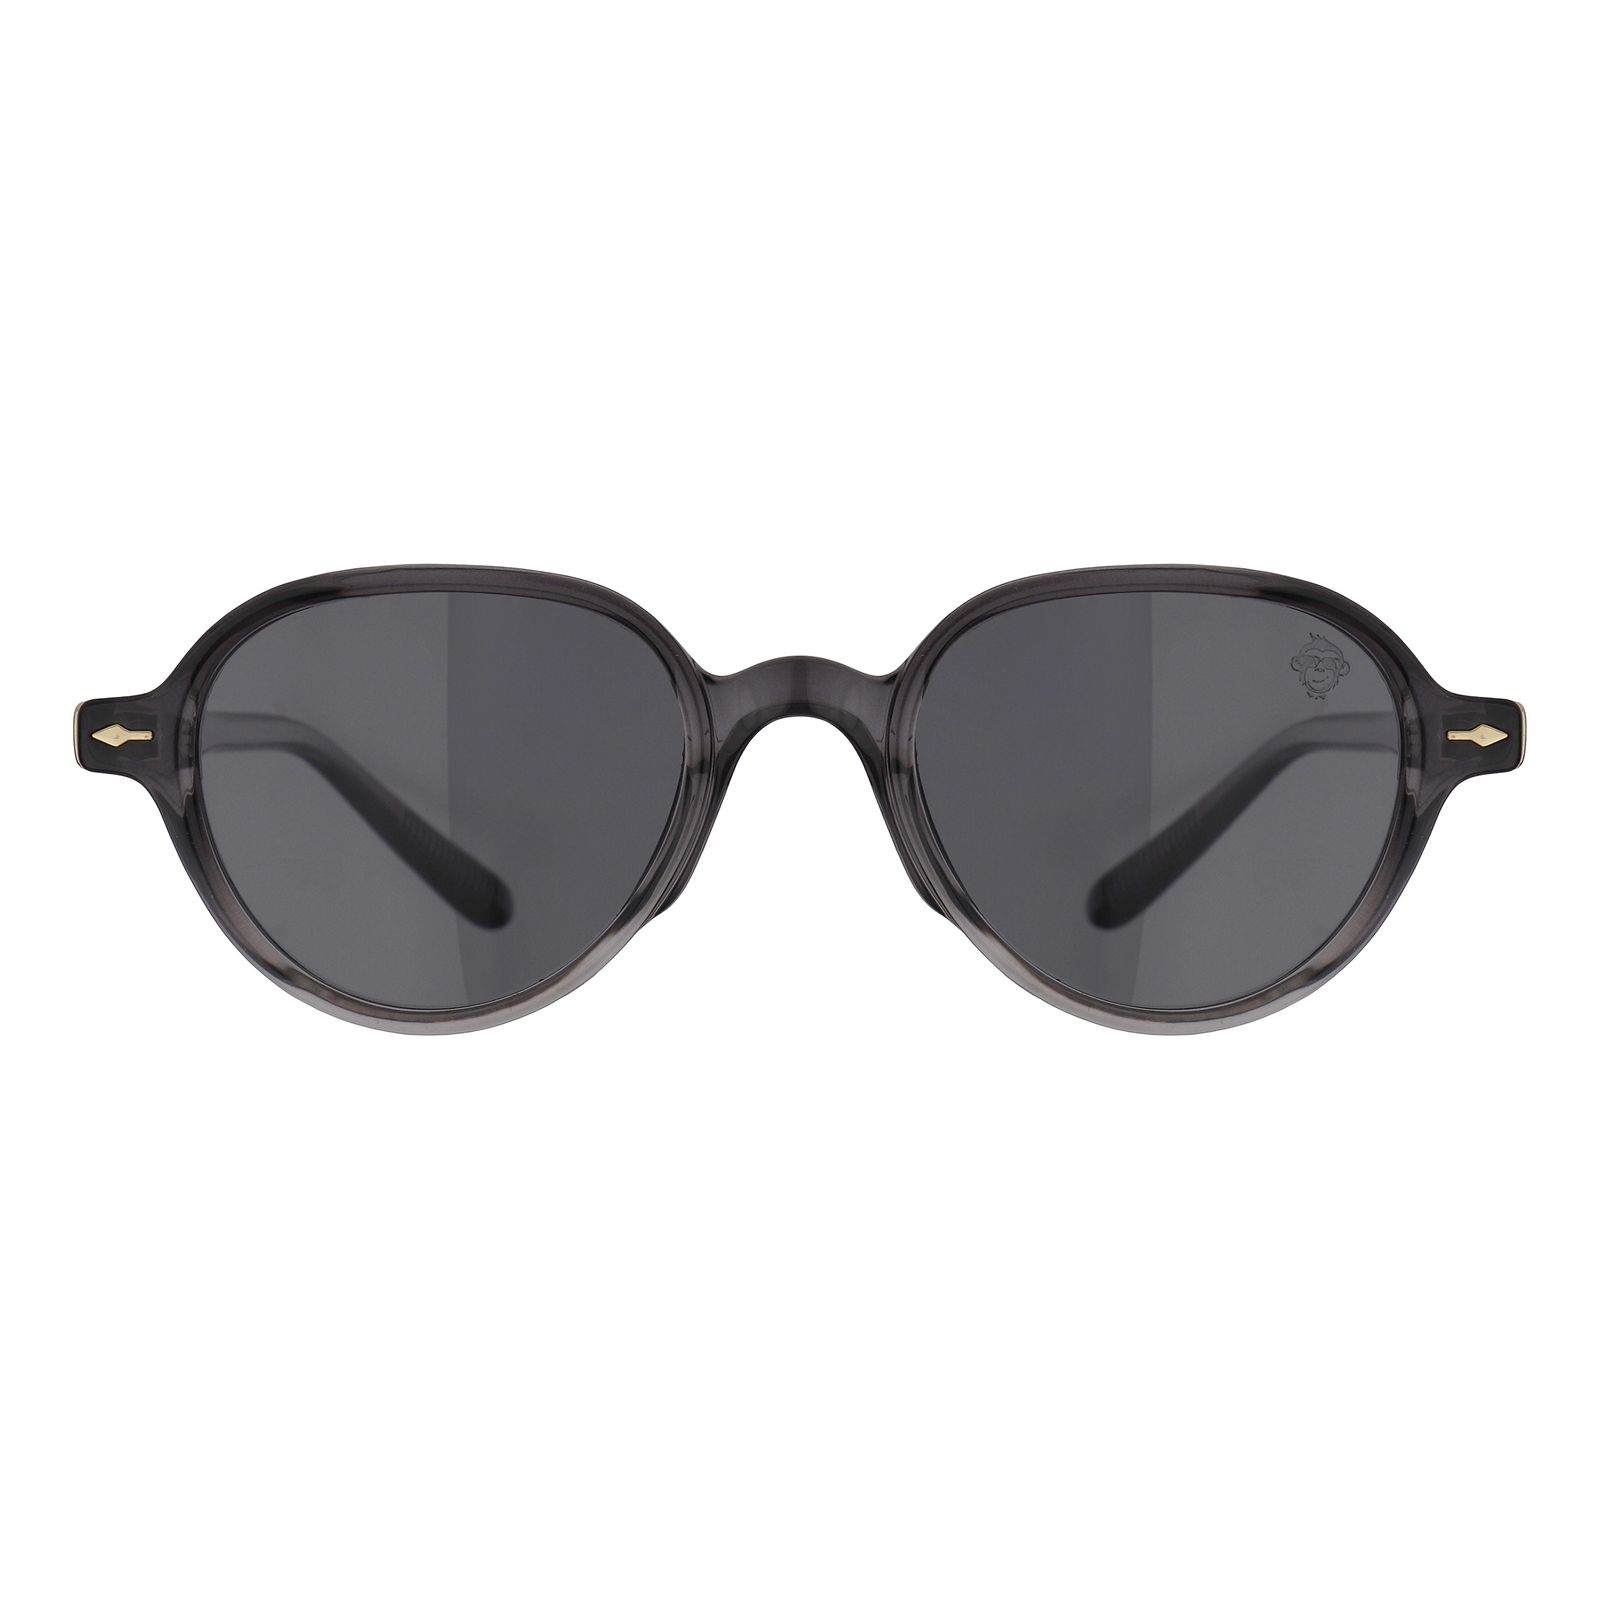 عینک آفتابی مستر مانکی مدل 6036 gr -  - 1